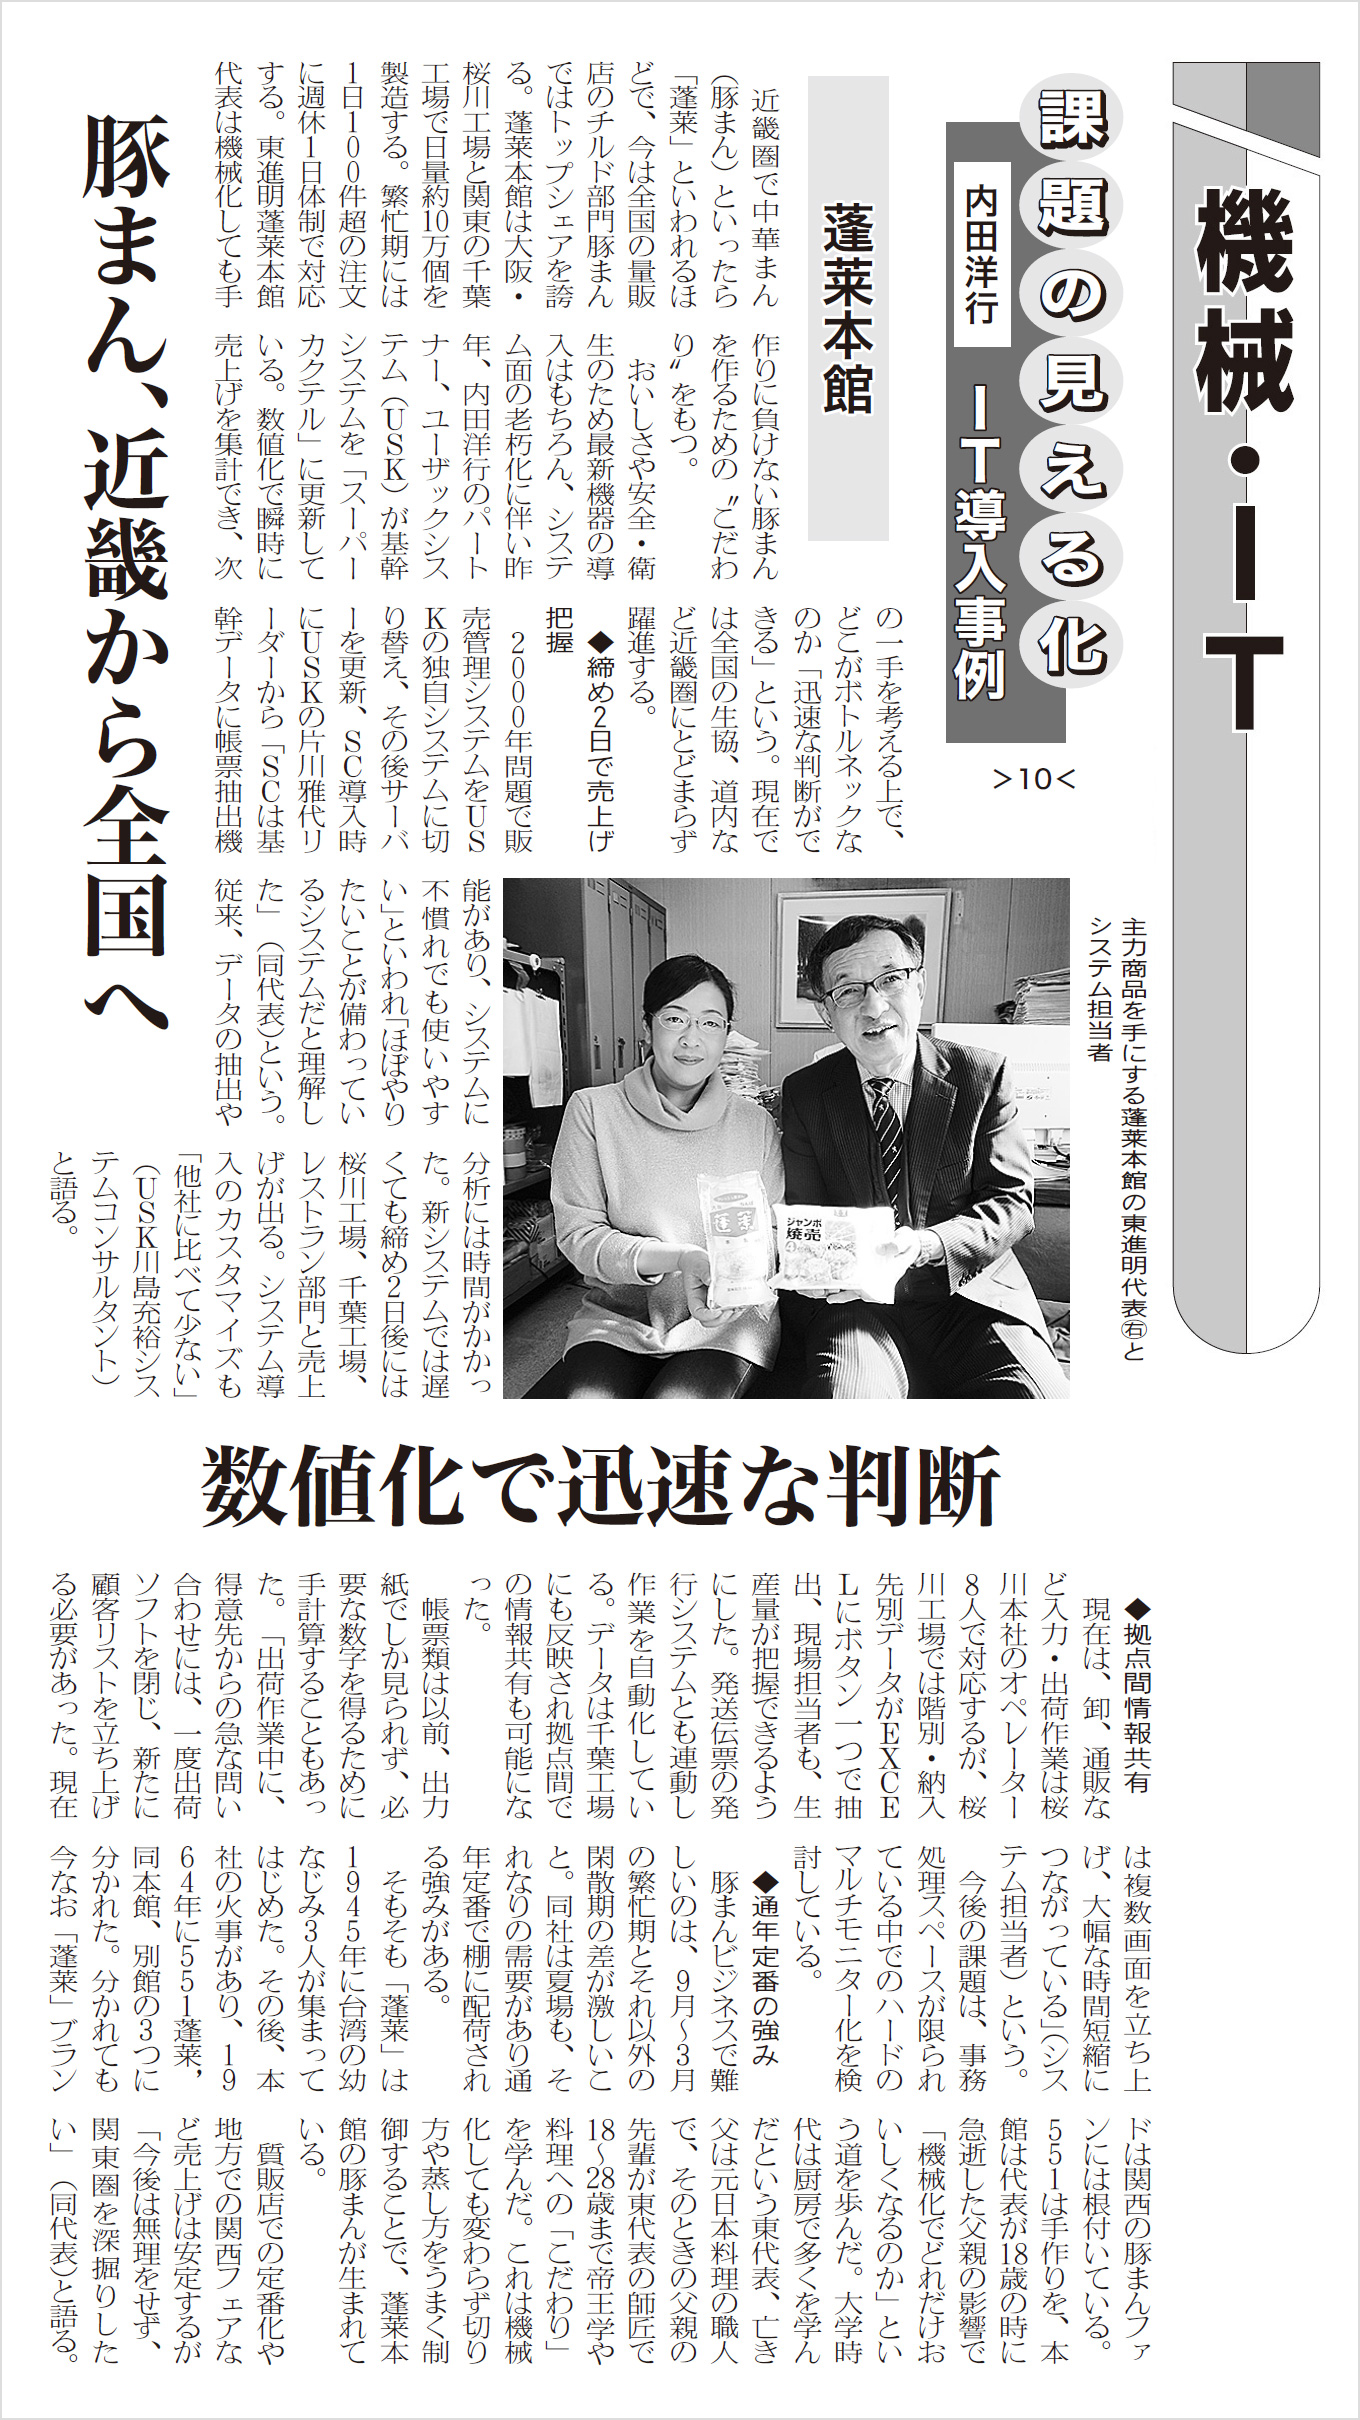 日本食糧新聞 2 19版 に 株式会社蓬莱本館様の基幹システム導入事例の記事が掲載されました 情報システム分野 内田洋行